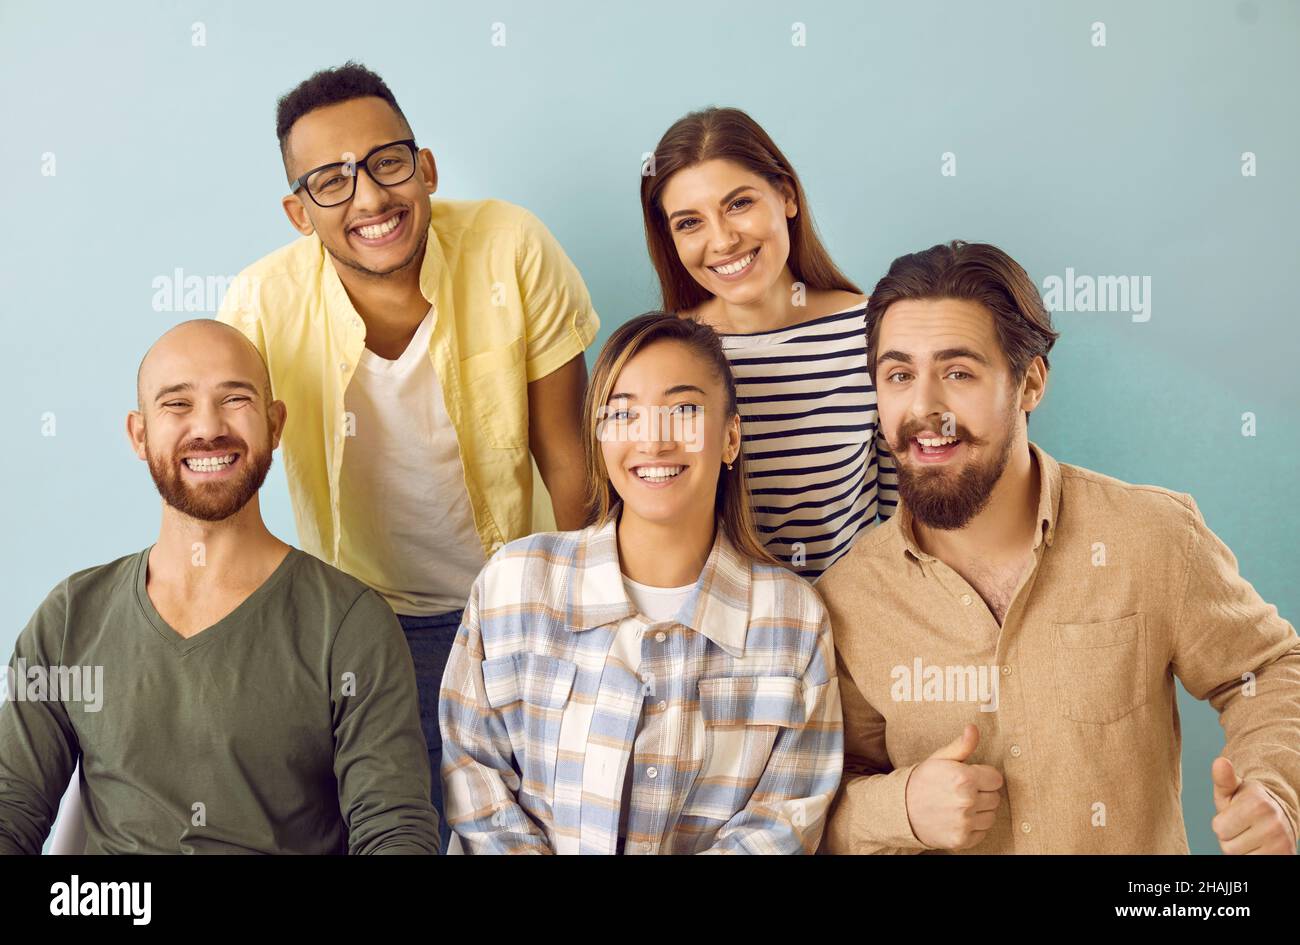 Gruppenportrait von fröhlichen jungen multiethnischen Freunden, die vor der Kamera lächeln Stockfoto